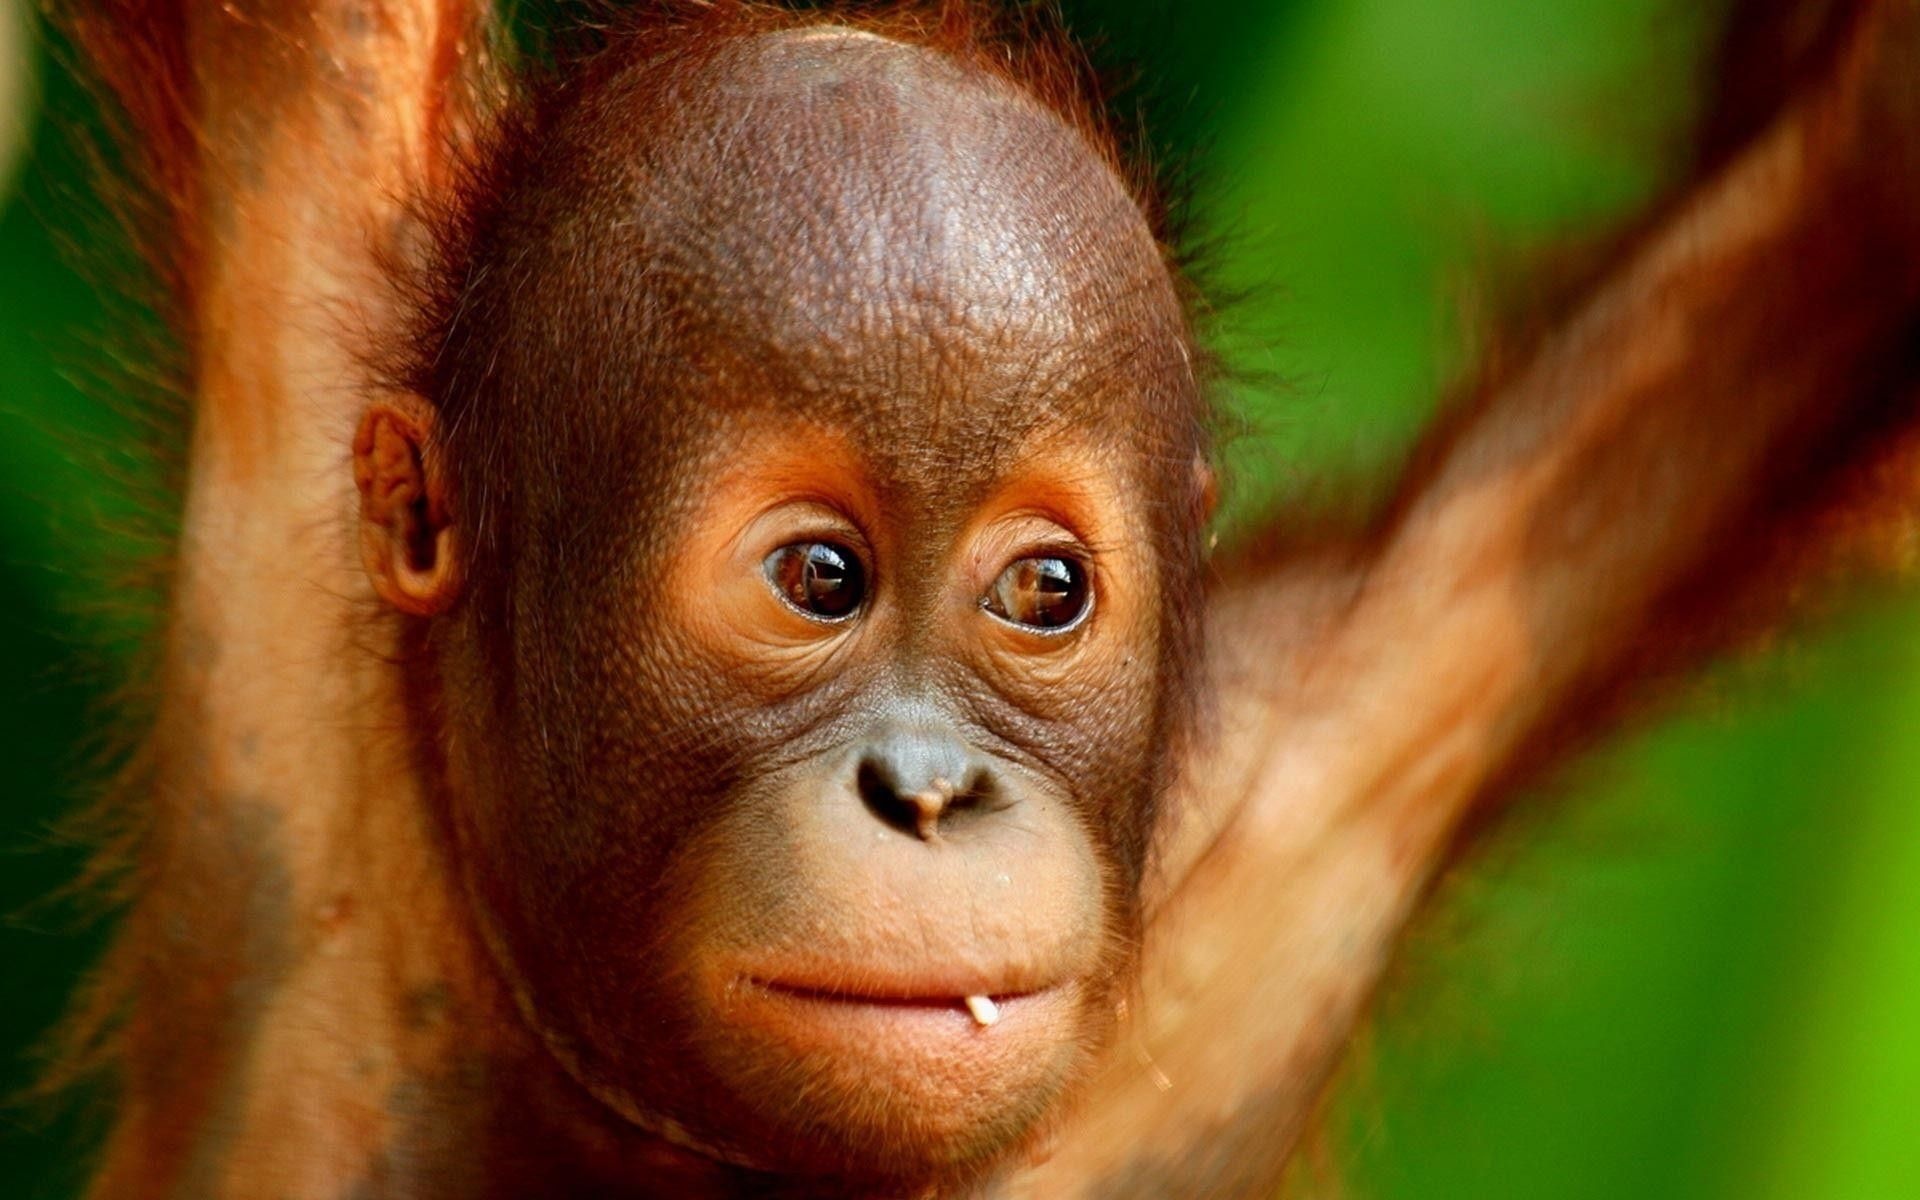 Baby orangutan wallpapers, Adorable primate, Innocent eyes, Nature's beauty, 1920x1200 HD Desktop